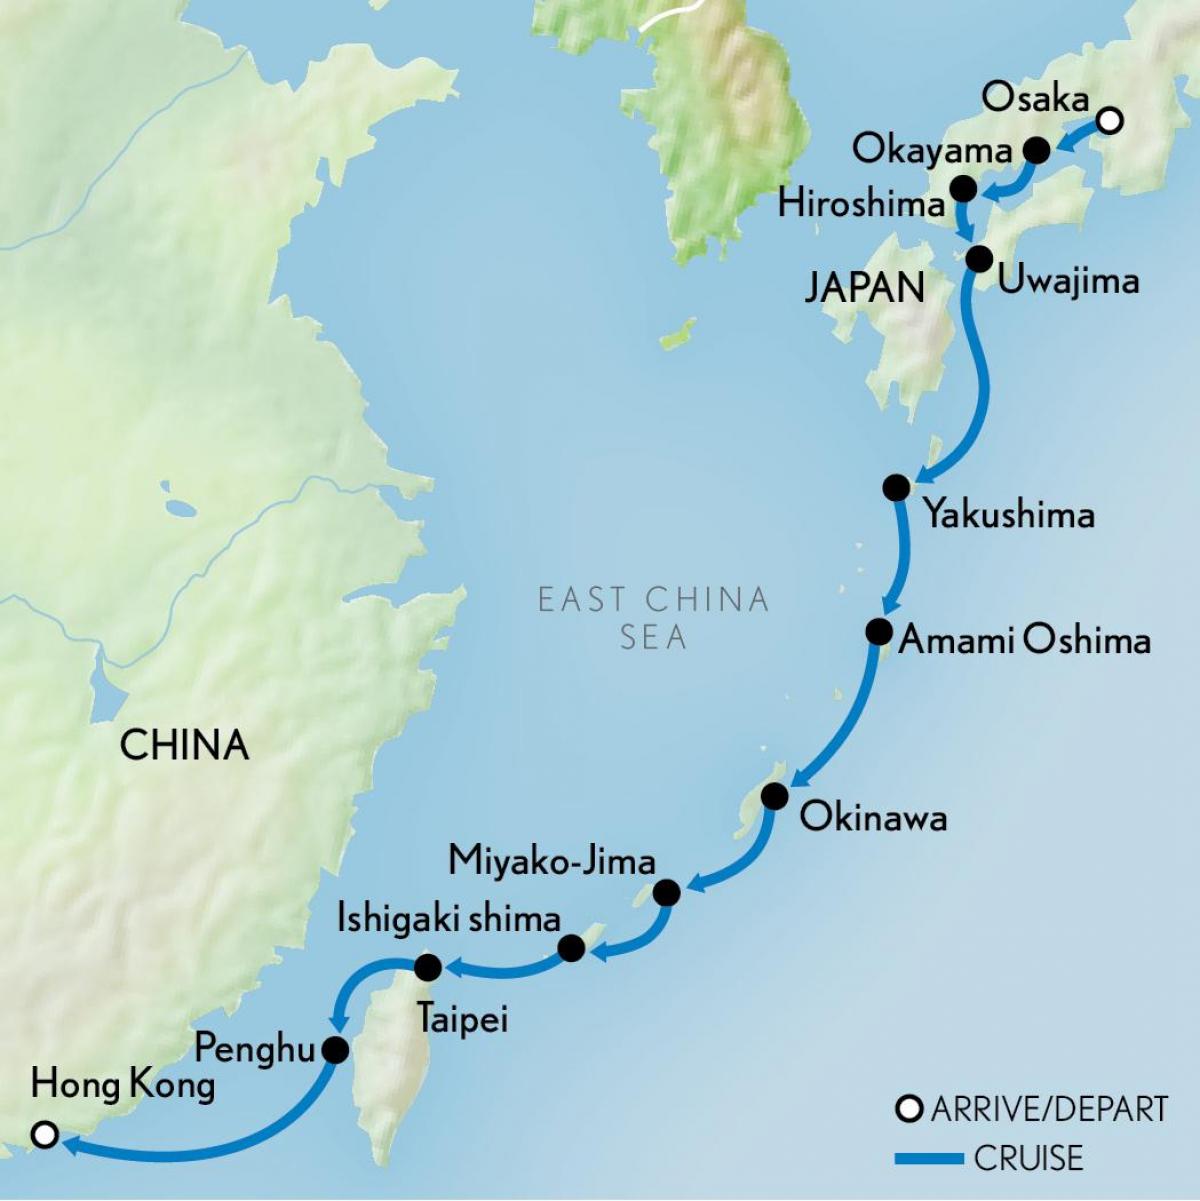 zemljevid Hong Kong in japonska